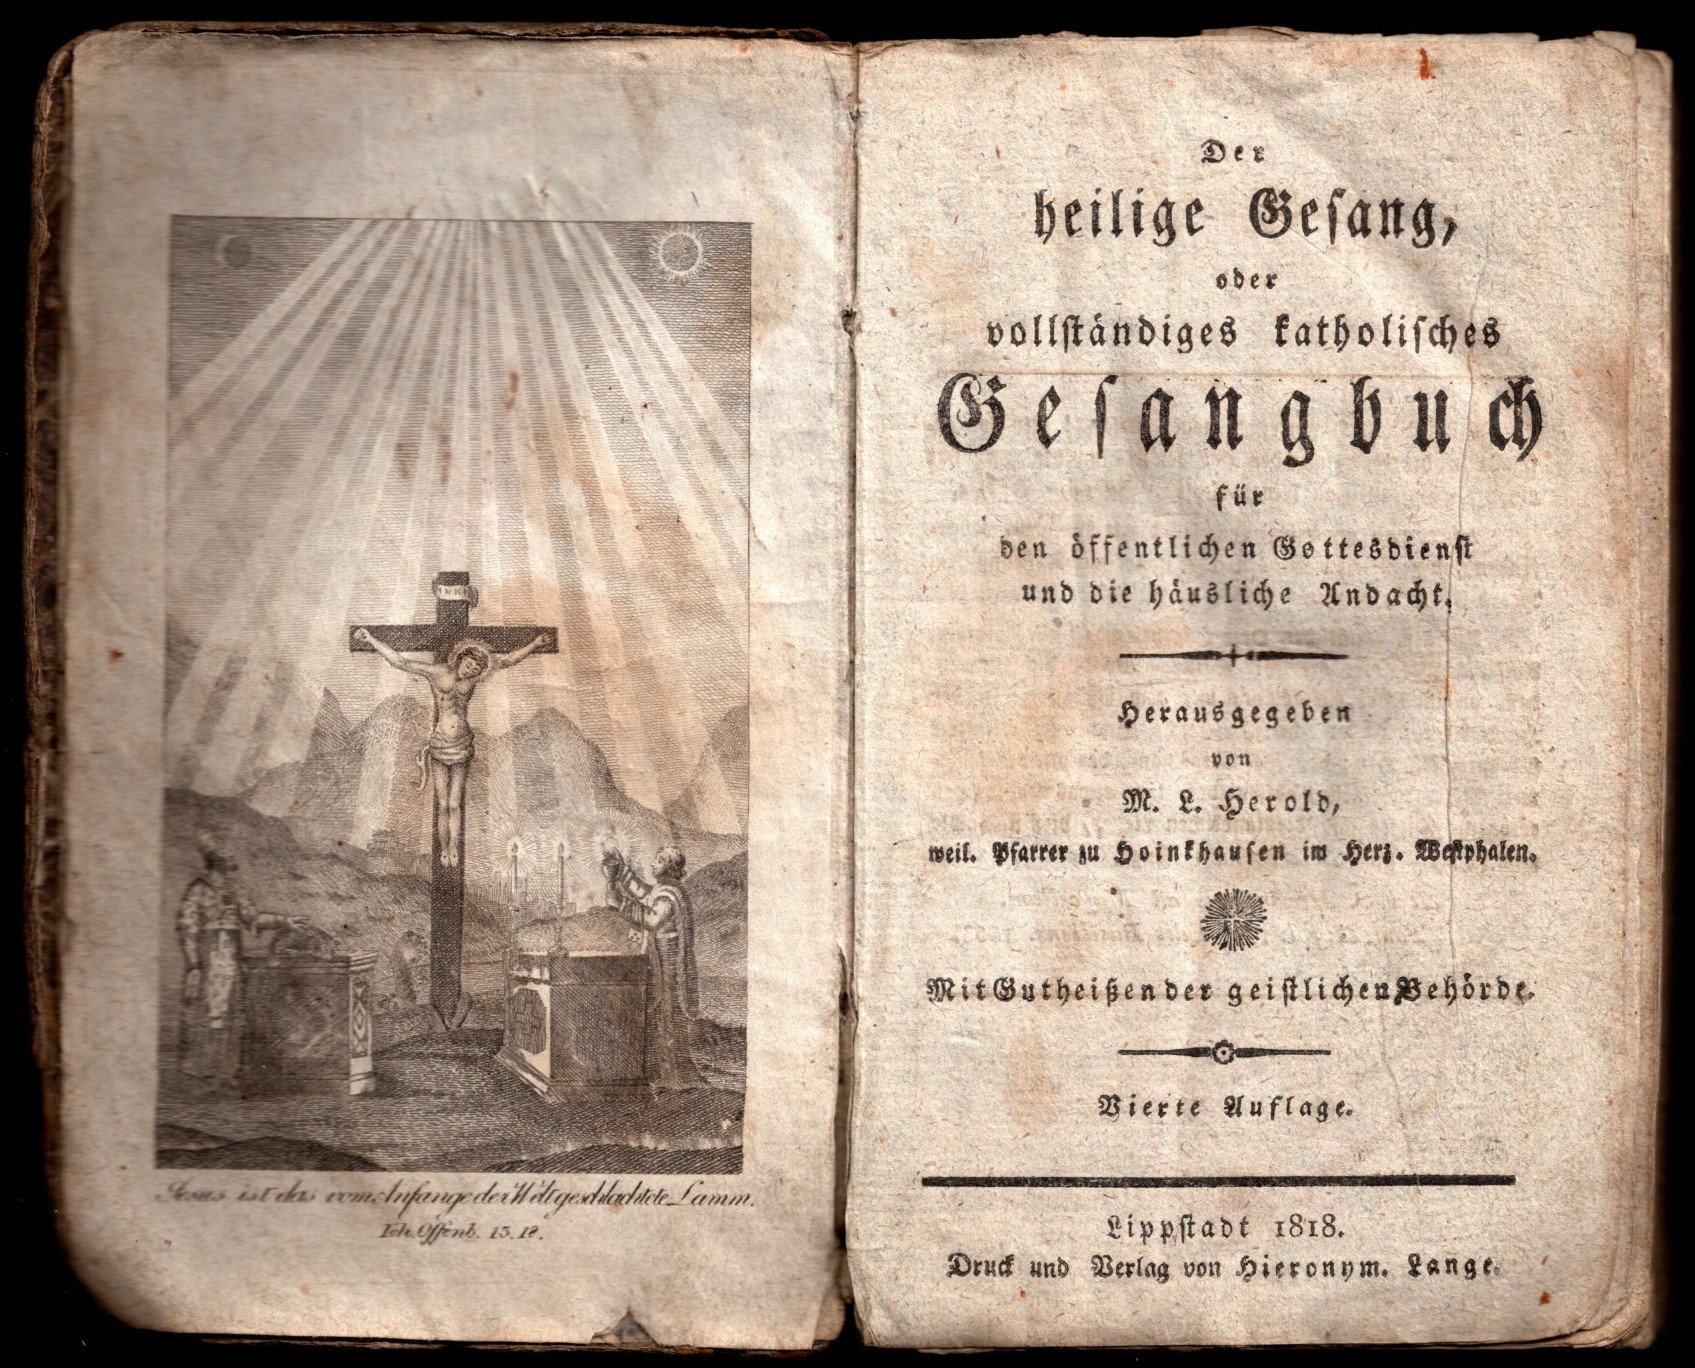 Gesangbuch von M. L. Herold, 1818 (Stadtmuseum Lippstadt RR-F)